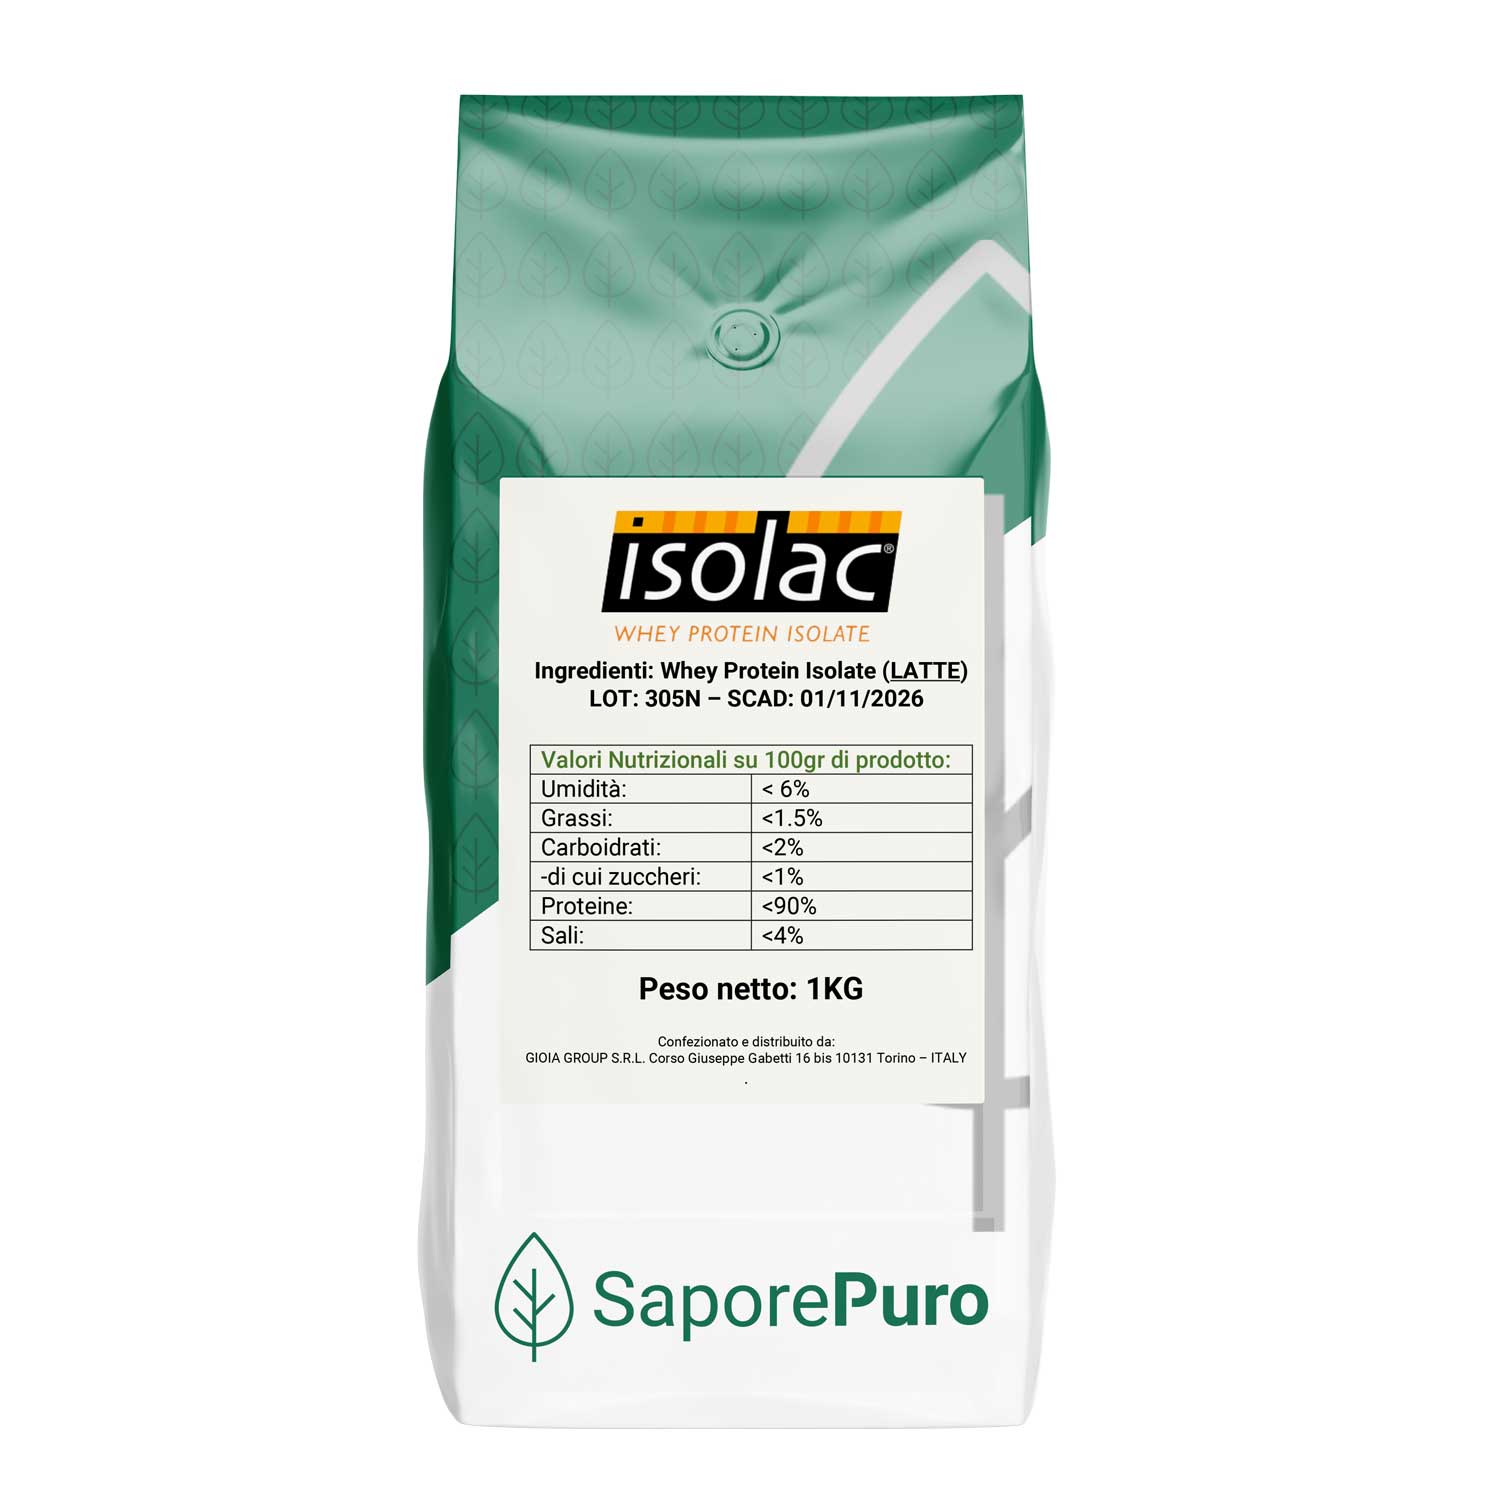 ISOLAC -  Proteine Isolate del Latte Performanti -  90% di parte proteica - 1kg